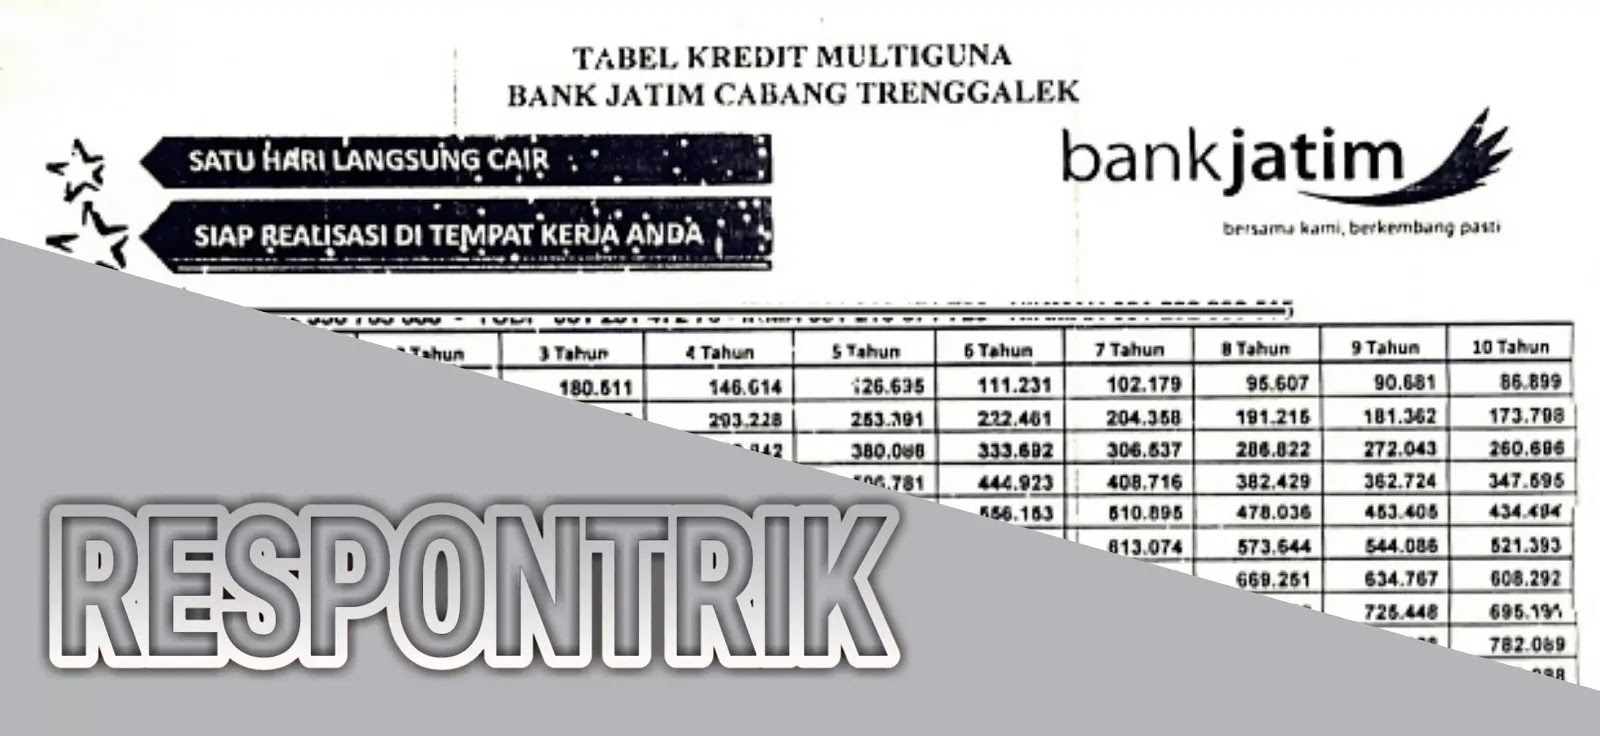 Tabel pinjaman bank jatim untuk pns (Kredit Multiguna